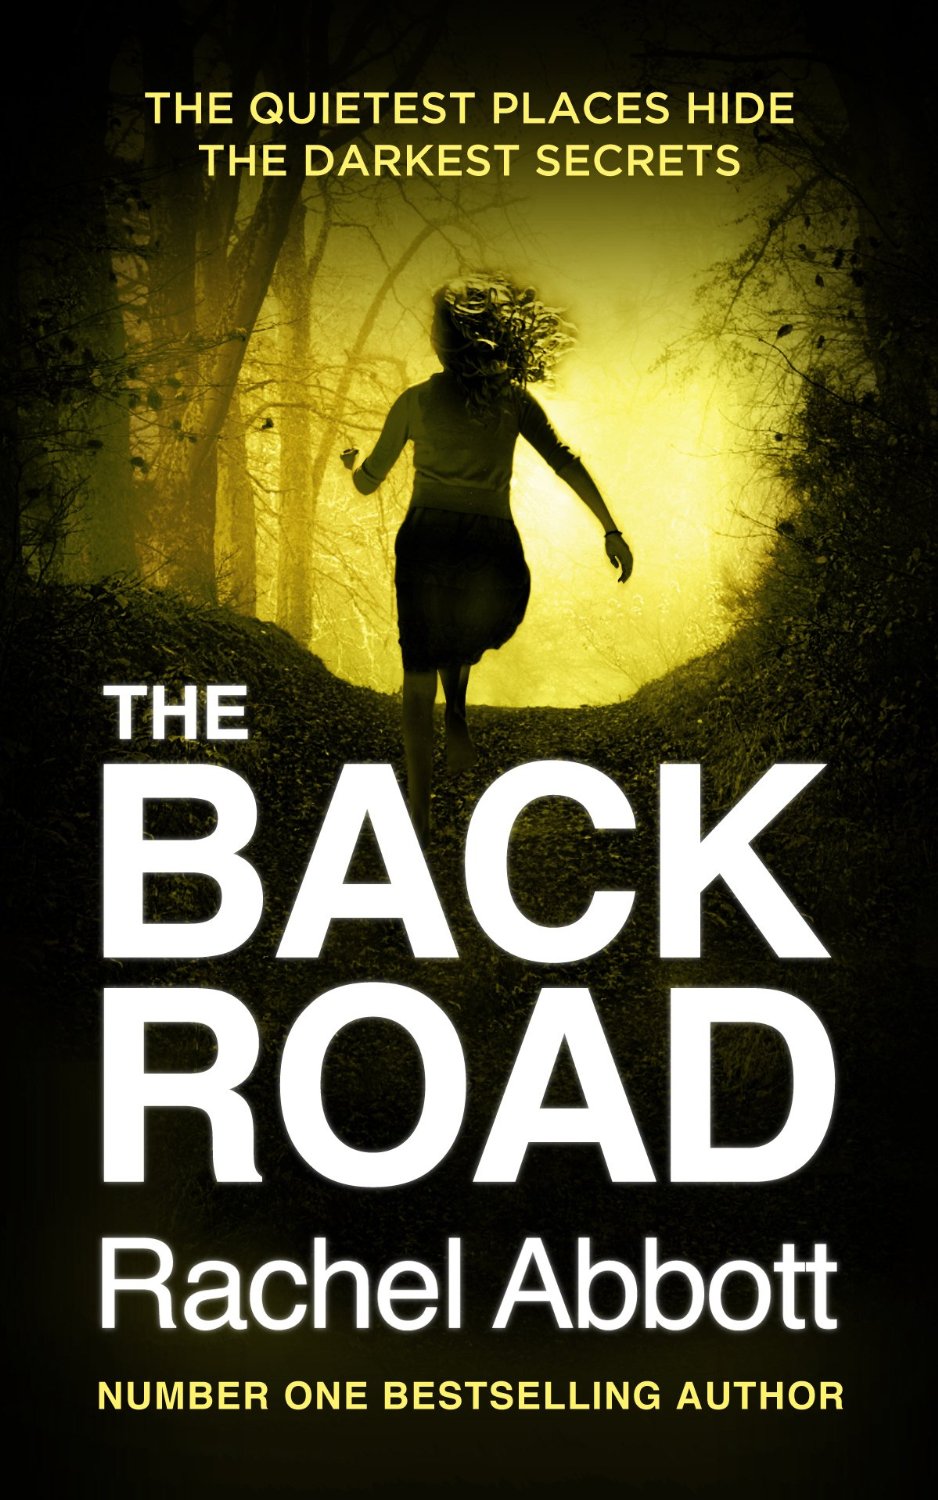 Rachel Abbott – The Back Road